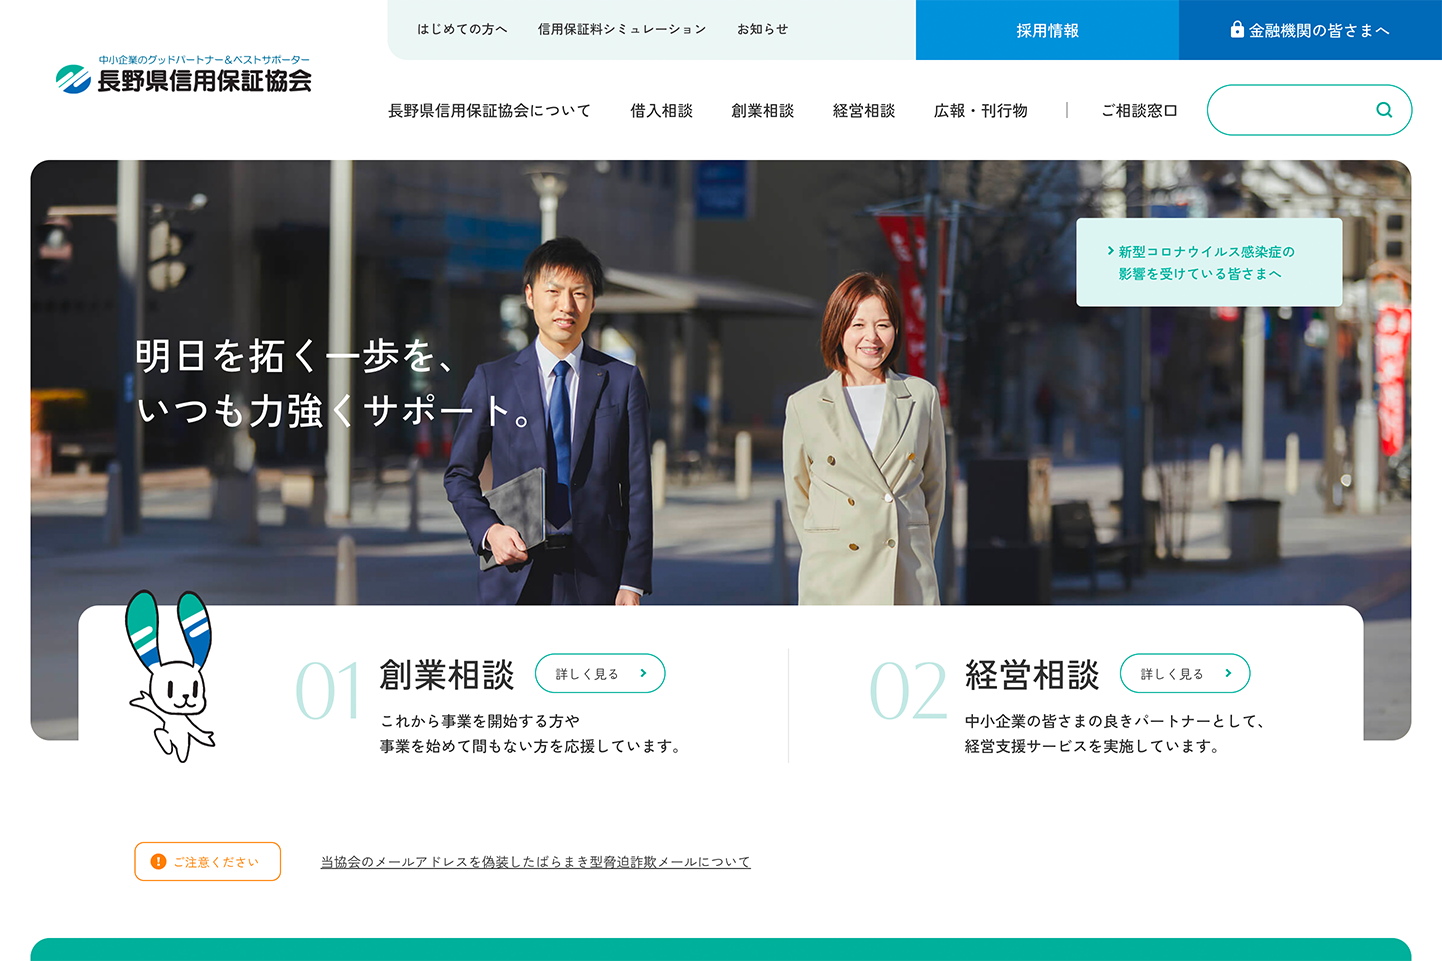 長野県信用保証協会 公式サイト